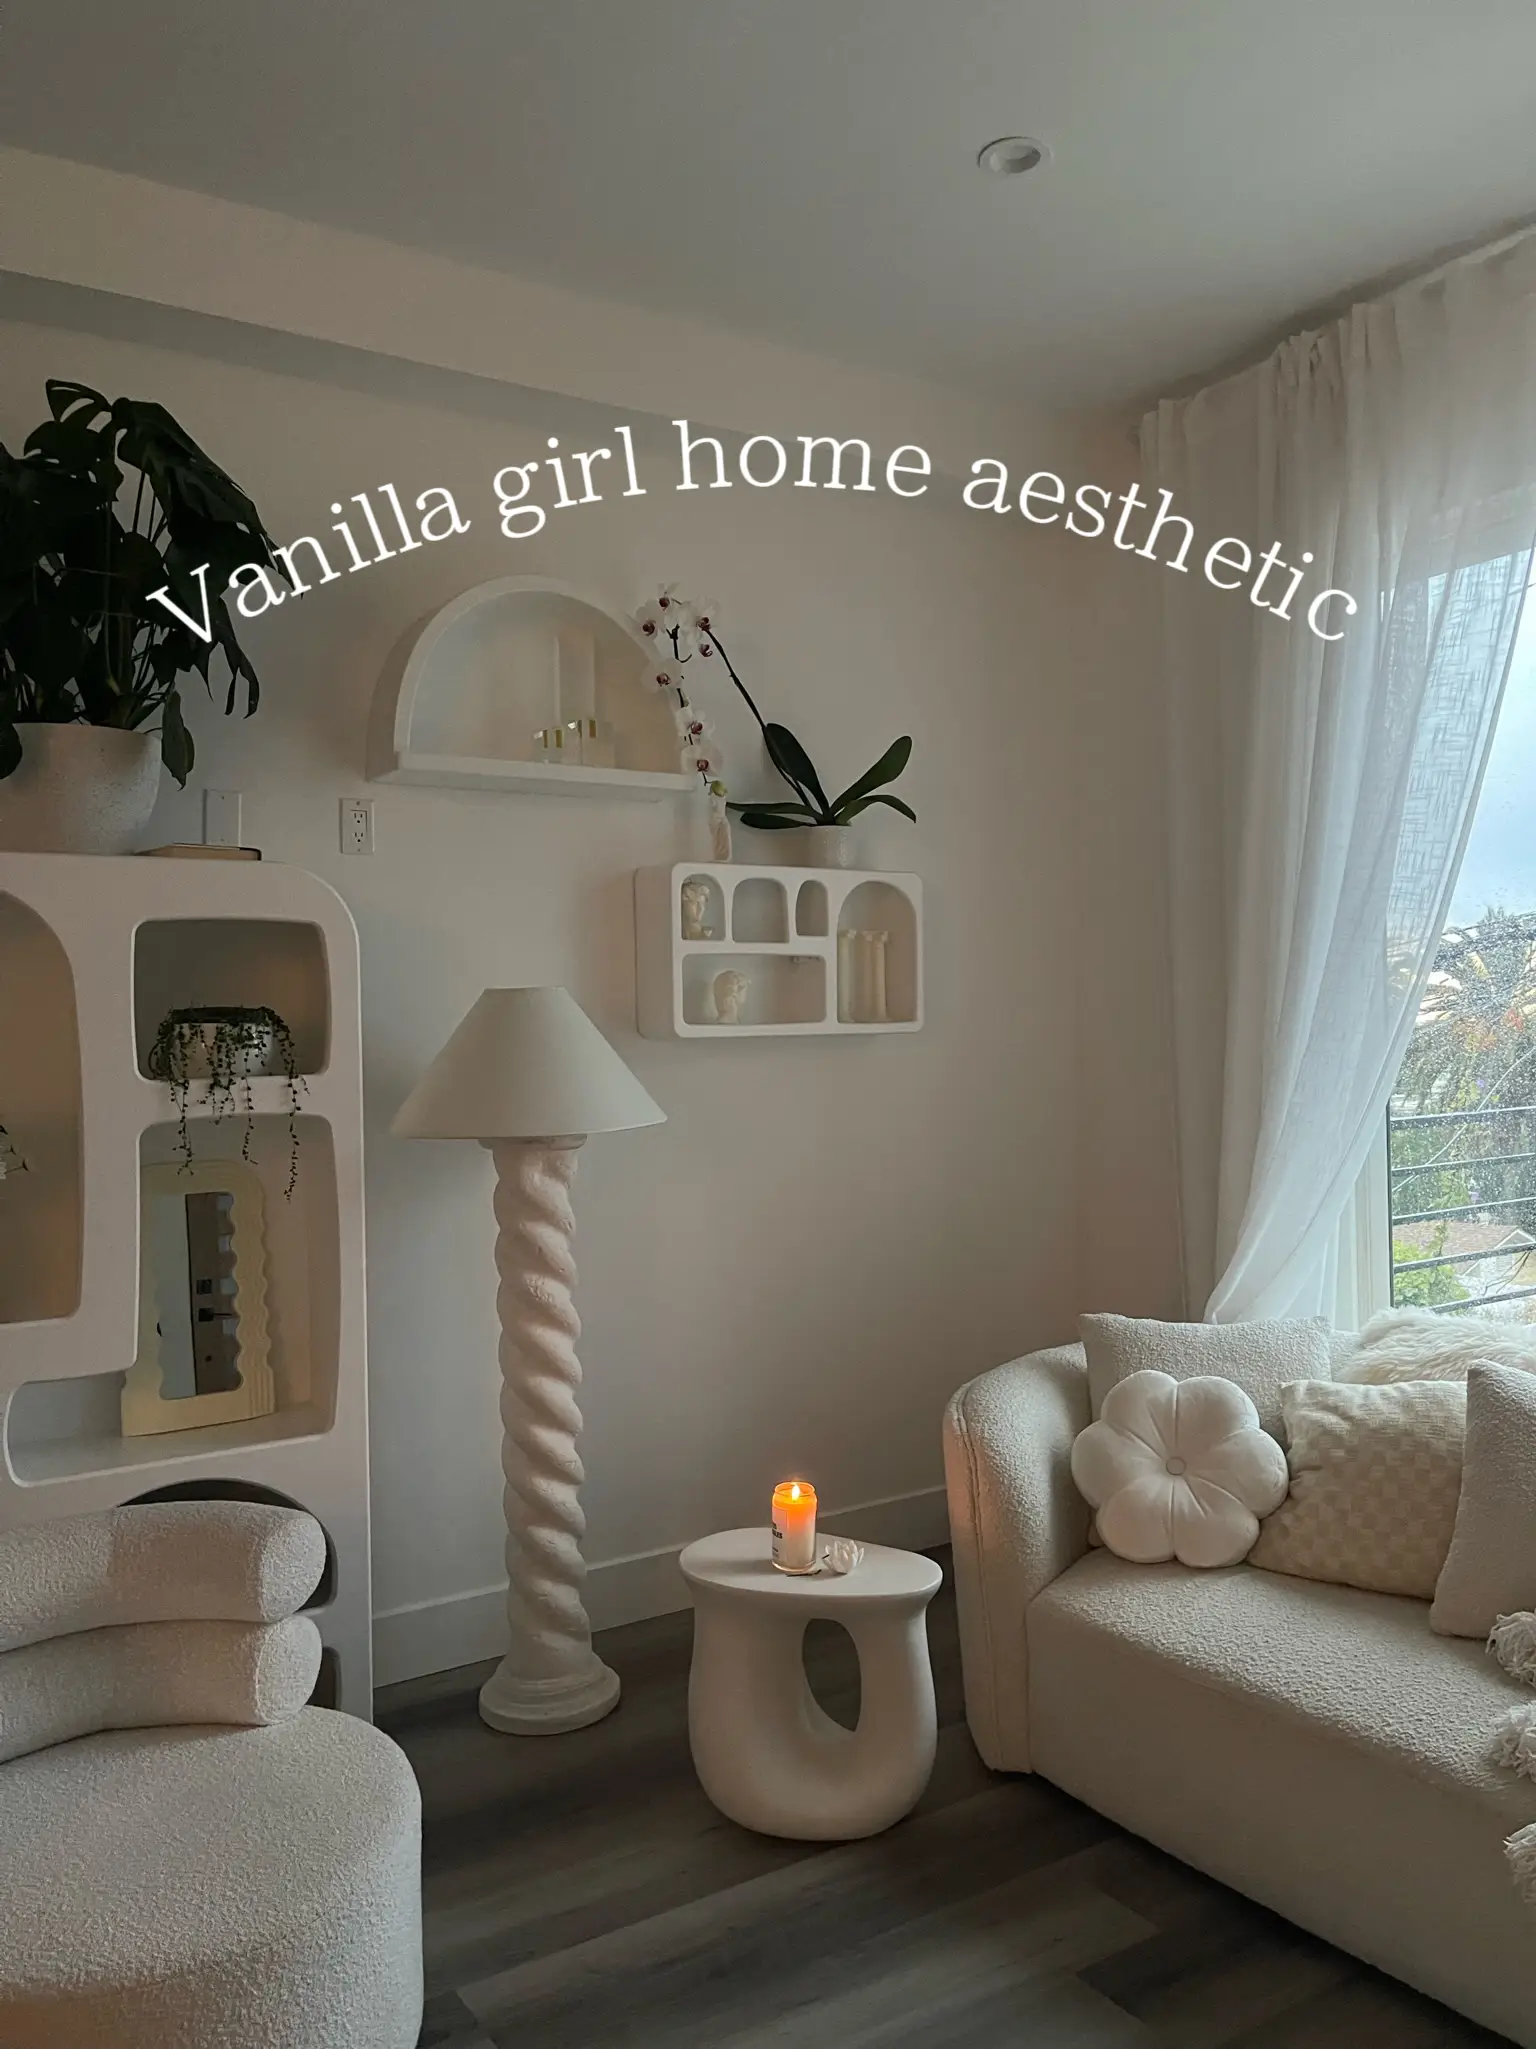 Vanilla Girl Home Decor essentials